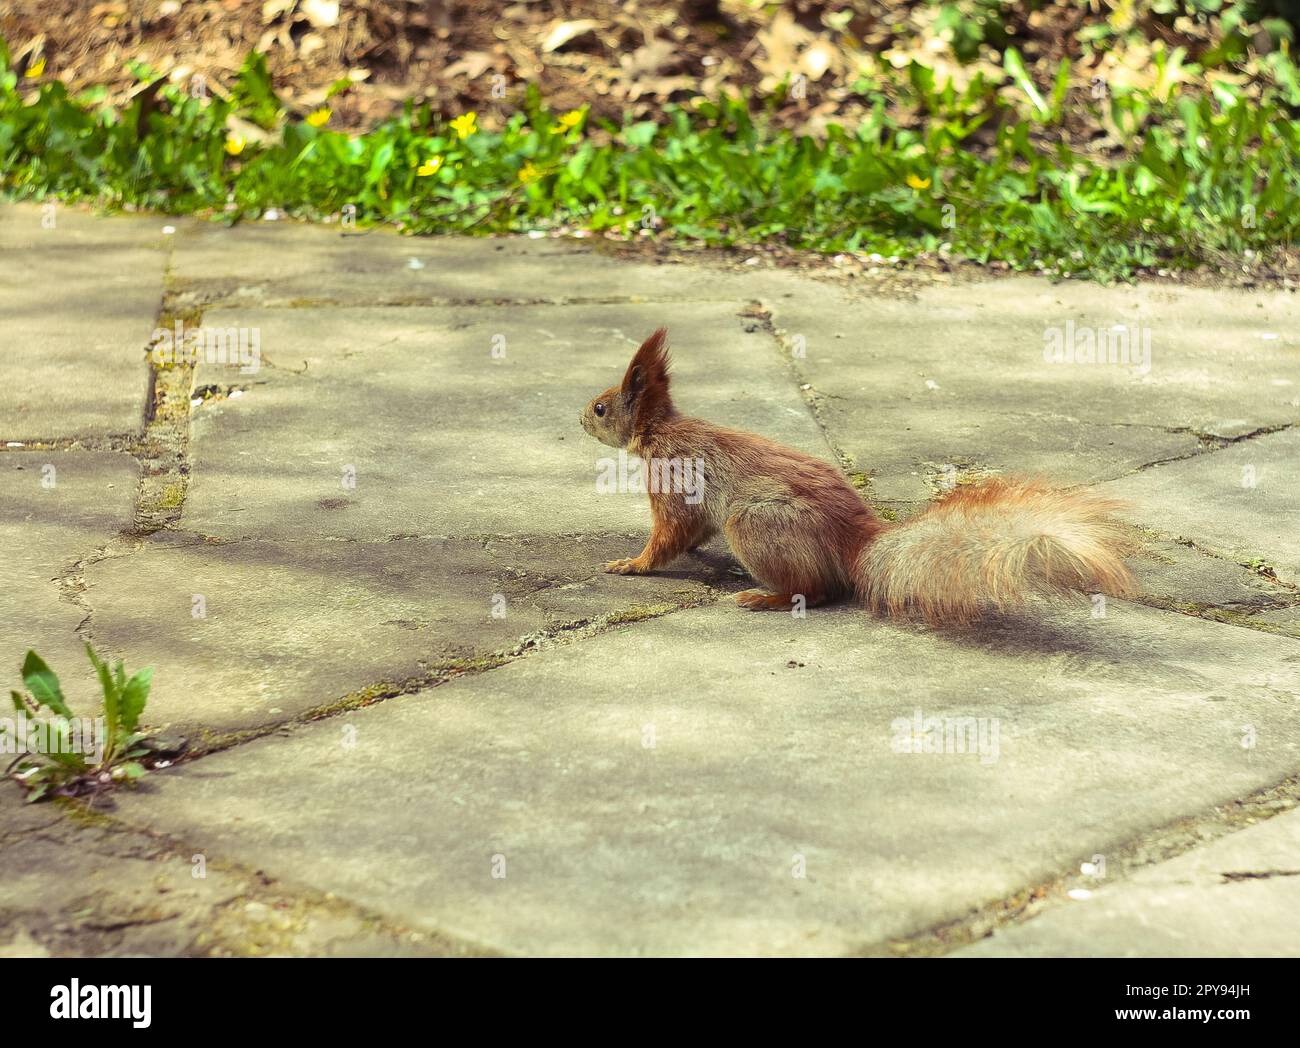 Nahaufnahme eines wilden Eichhörnchens, das auf einem Ziegelpfad im Park wegblickt, Konzeptfoto Stockfoto